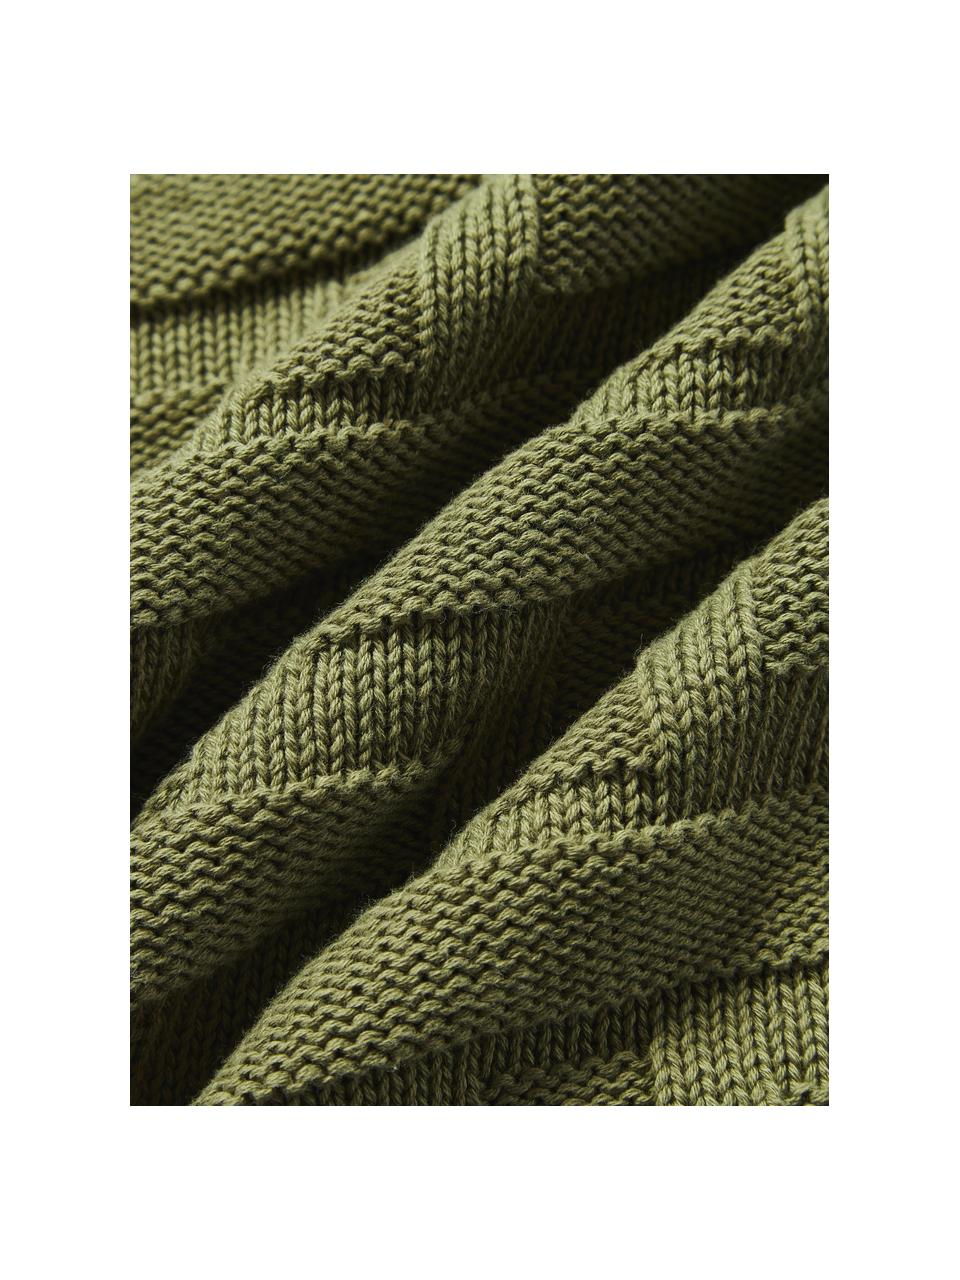 Copricuscino in cotone lavorato a maglia Gwen, 100% cotone, Verde oliva, Larg. 50 x Lung. 50 cm